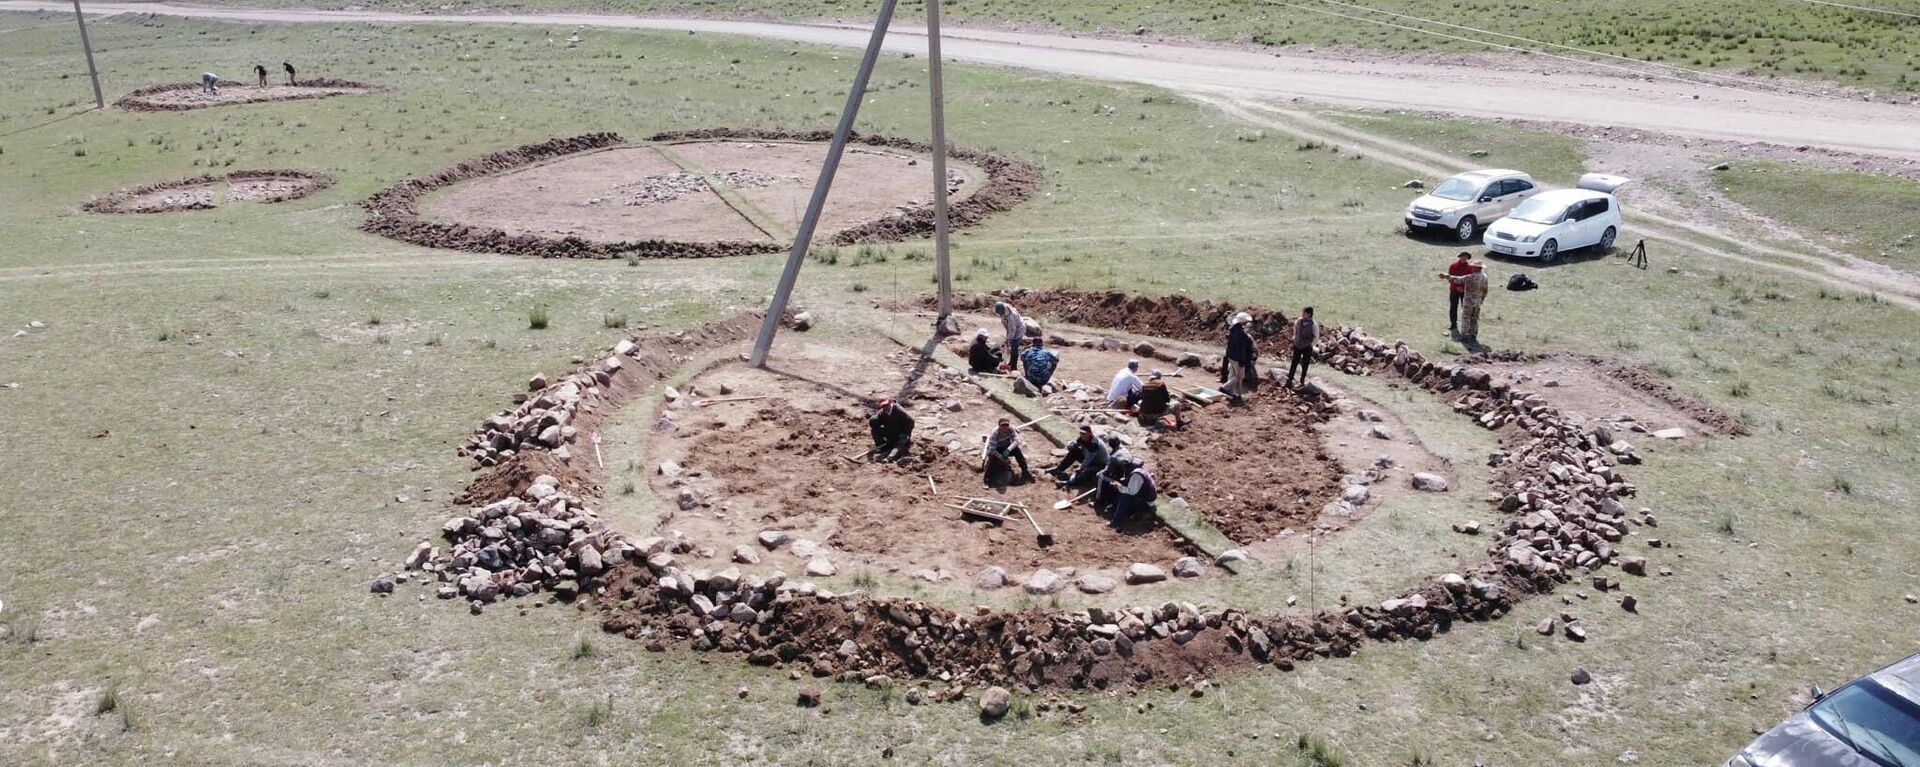 Обнаружение археологических находок рядом с одним из участков строящейся трассы север — юг - Sputnik Кыргызстан, 1920, 25.06.2022